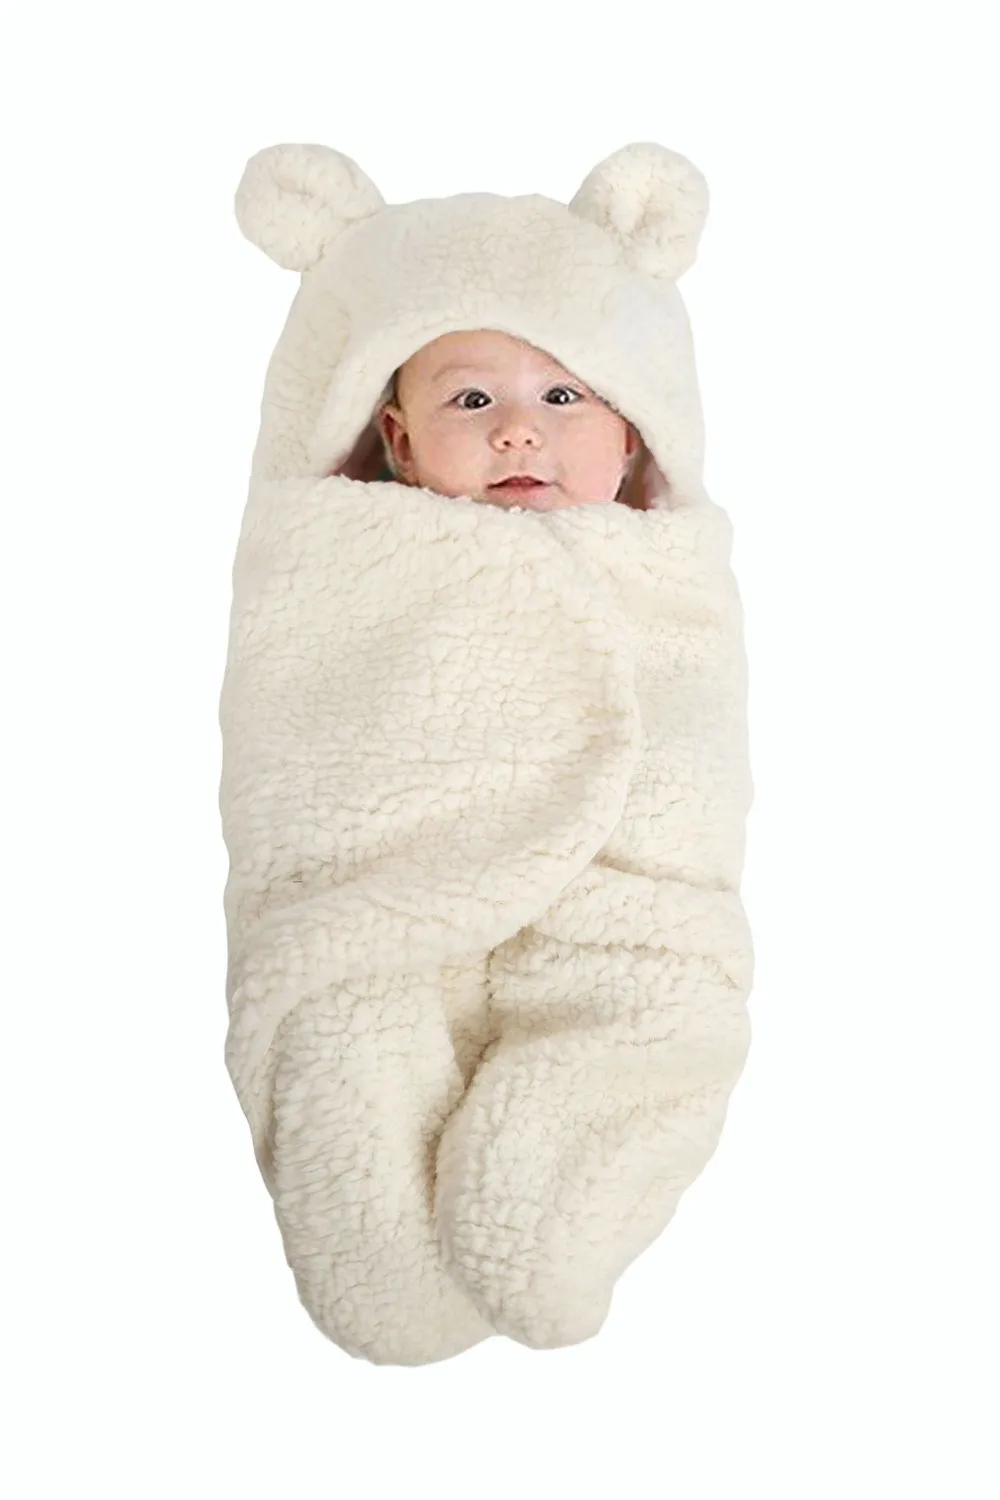 Брендовый детский спальный мешок с раздельными ножками, супер теплый, плюс бархат, милые уши панды, детское одеяло